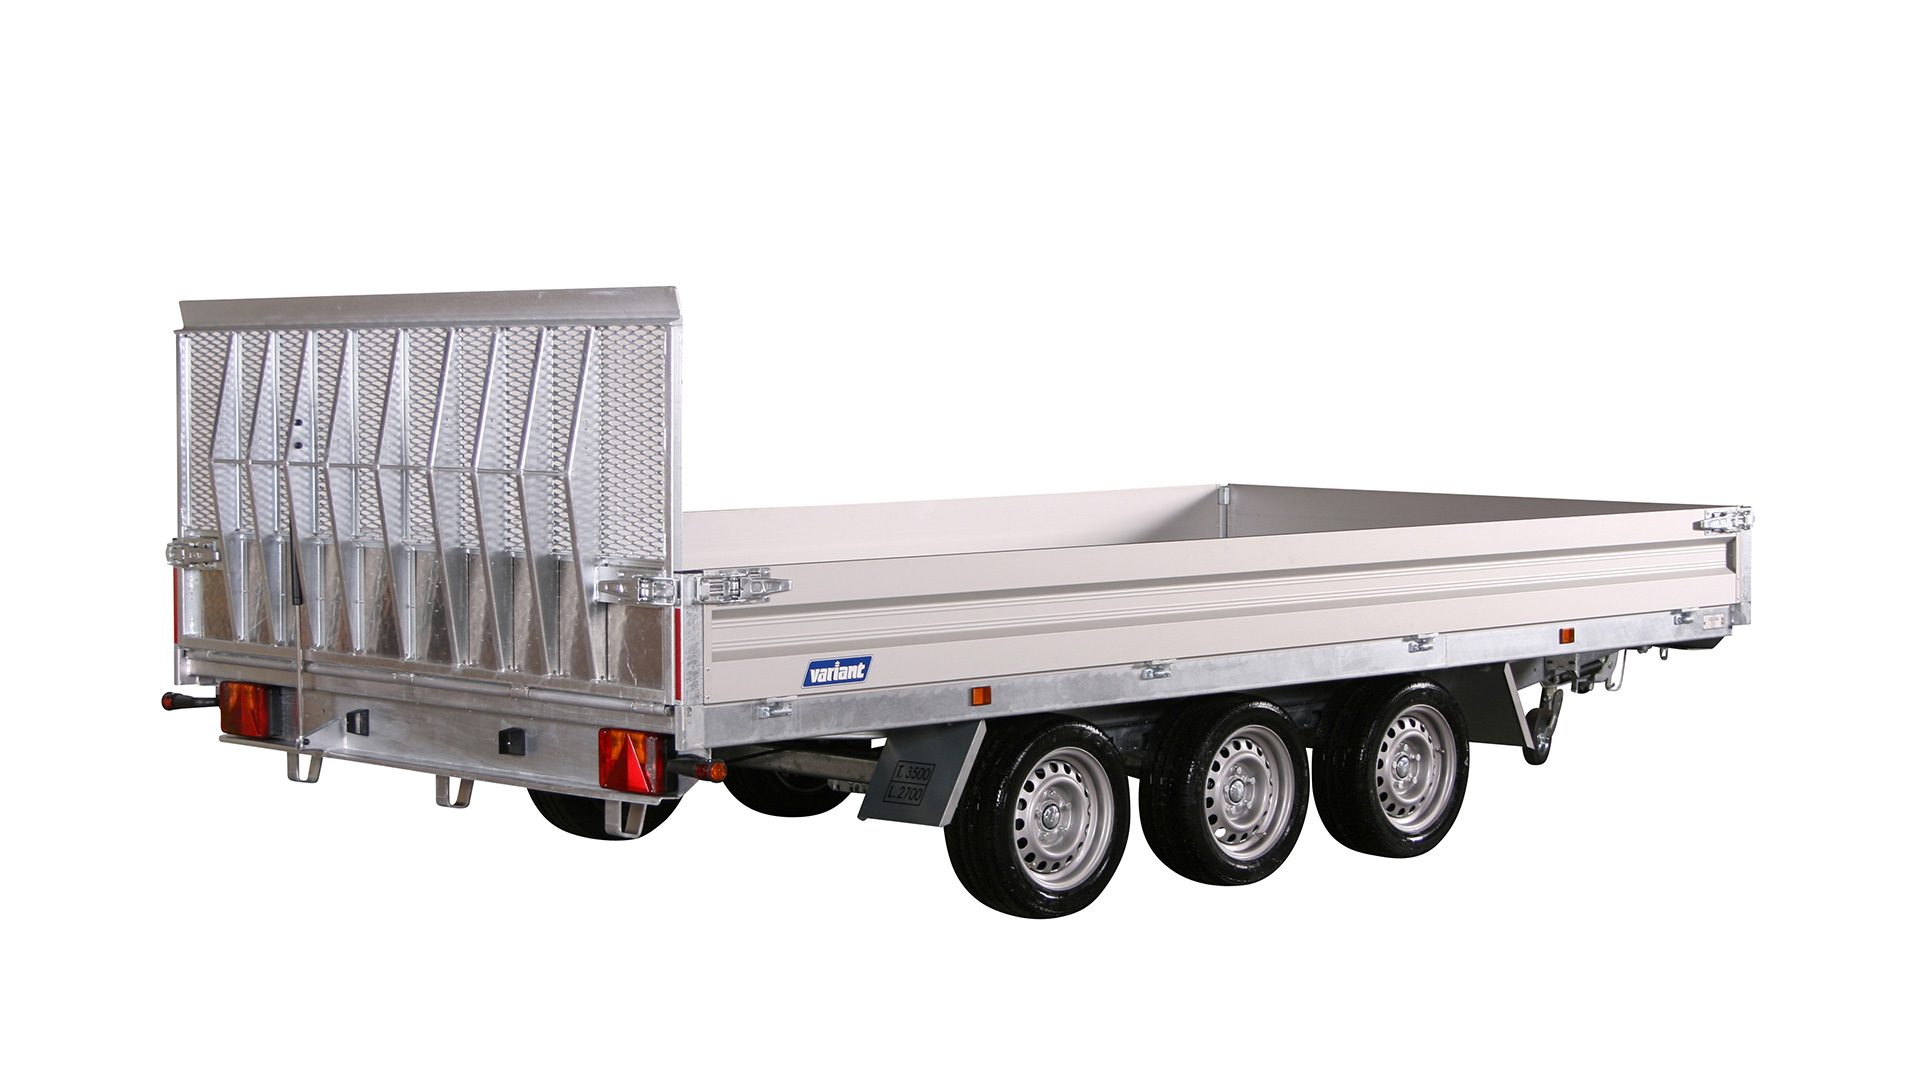 Variant PKW Anhänger Universaltransporter 3500 U4 - kippbar,3500 kg, Ladefläche 4,20 x 2,10 m Tridem mit Bordwände